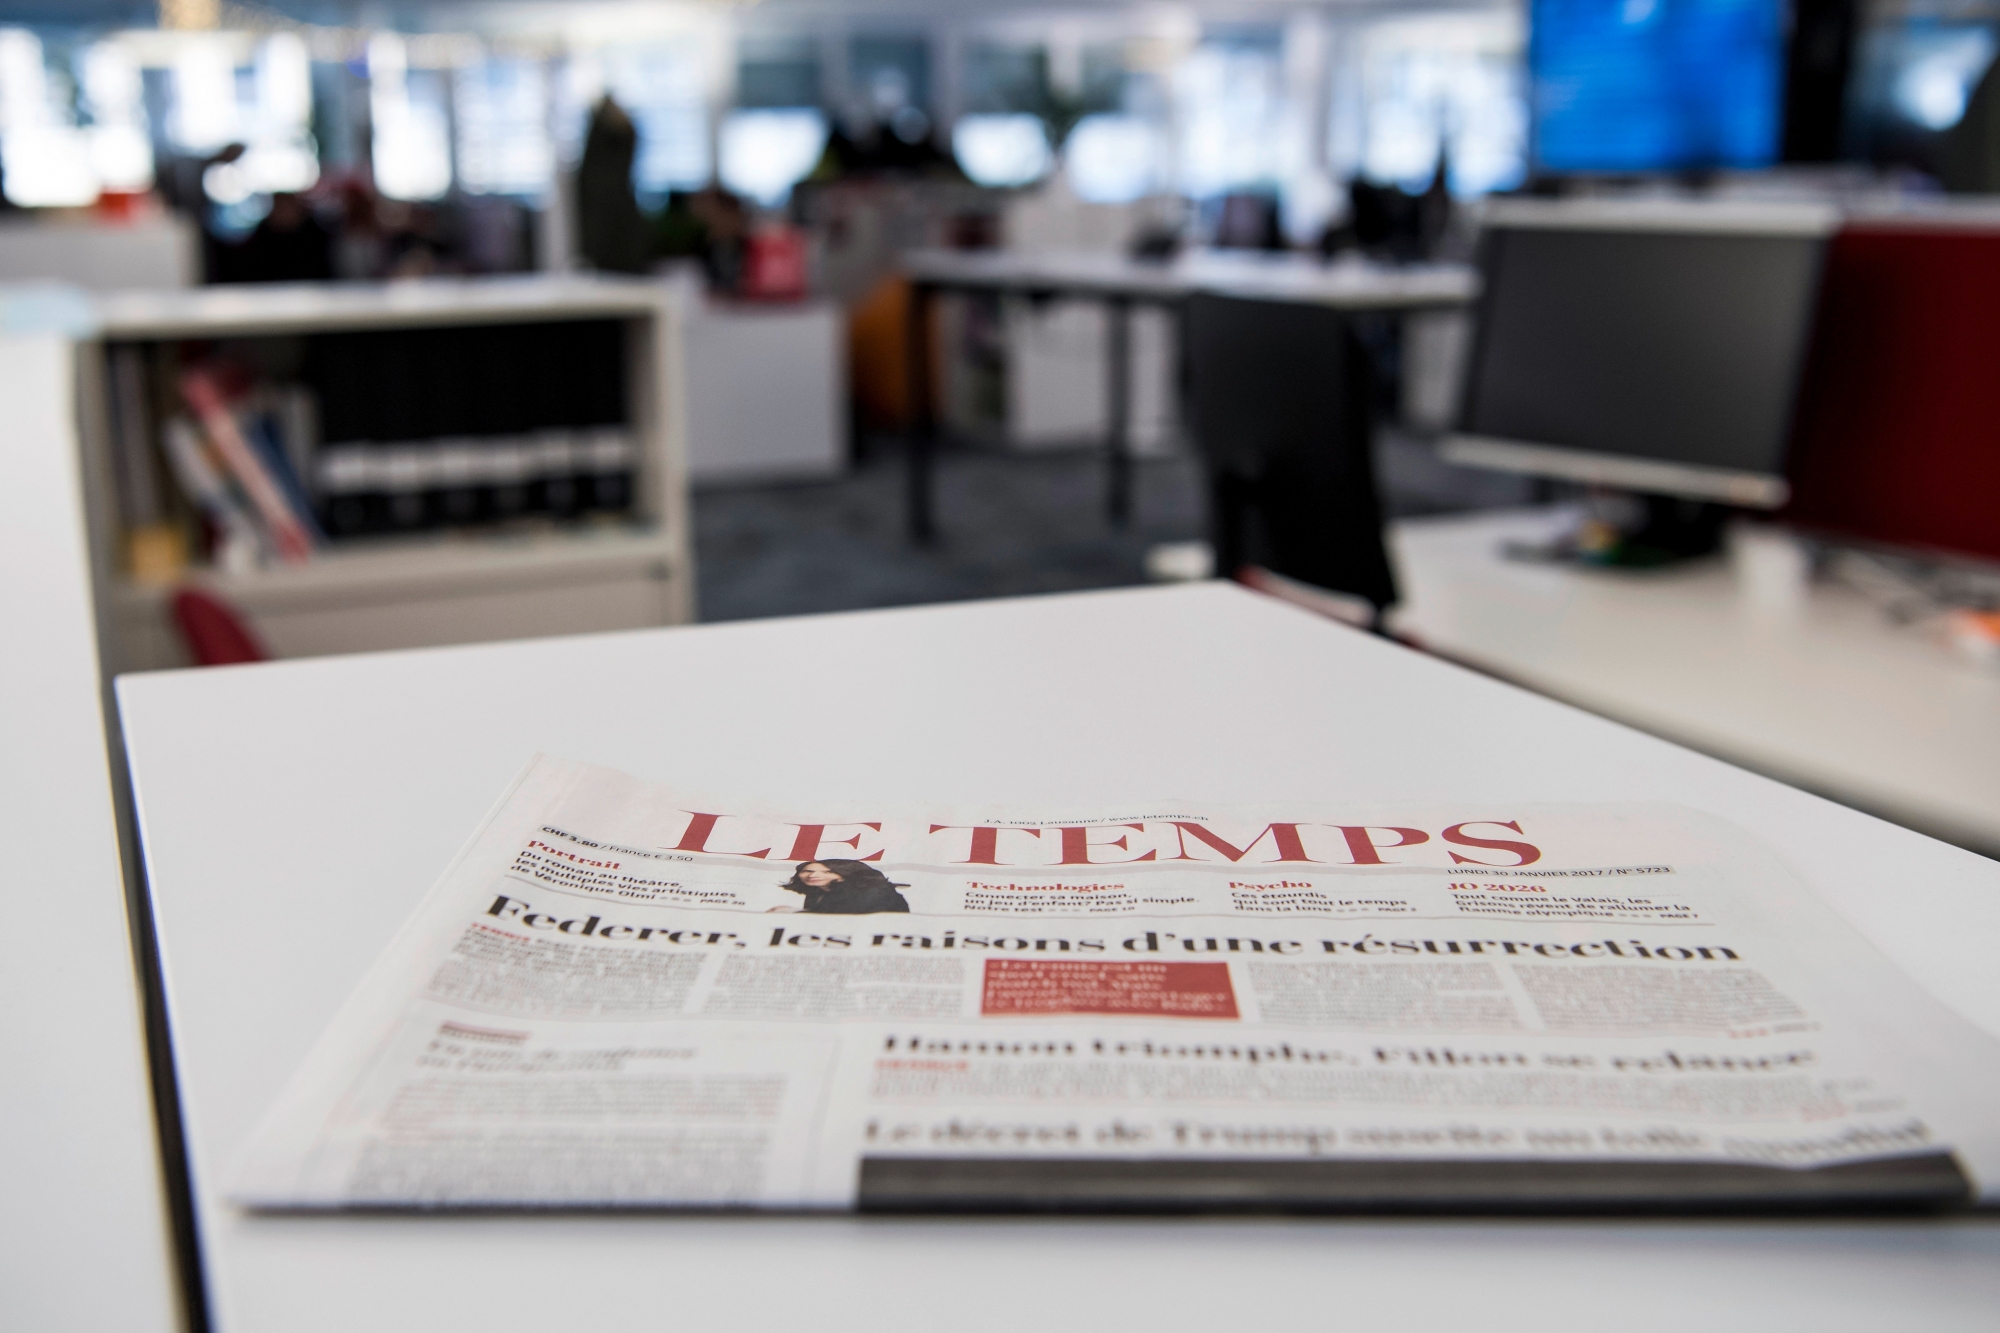 Un exemplaire du journal Le Temps est visible dans la newsroom du journal Le Temps ce mercredi 1 fevrier 2017 a Lausanne. (KEYSTONE/Jean-Christophe Bott) ArcInfo